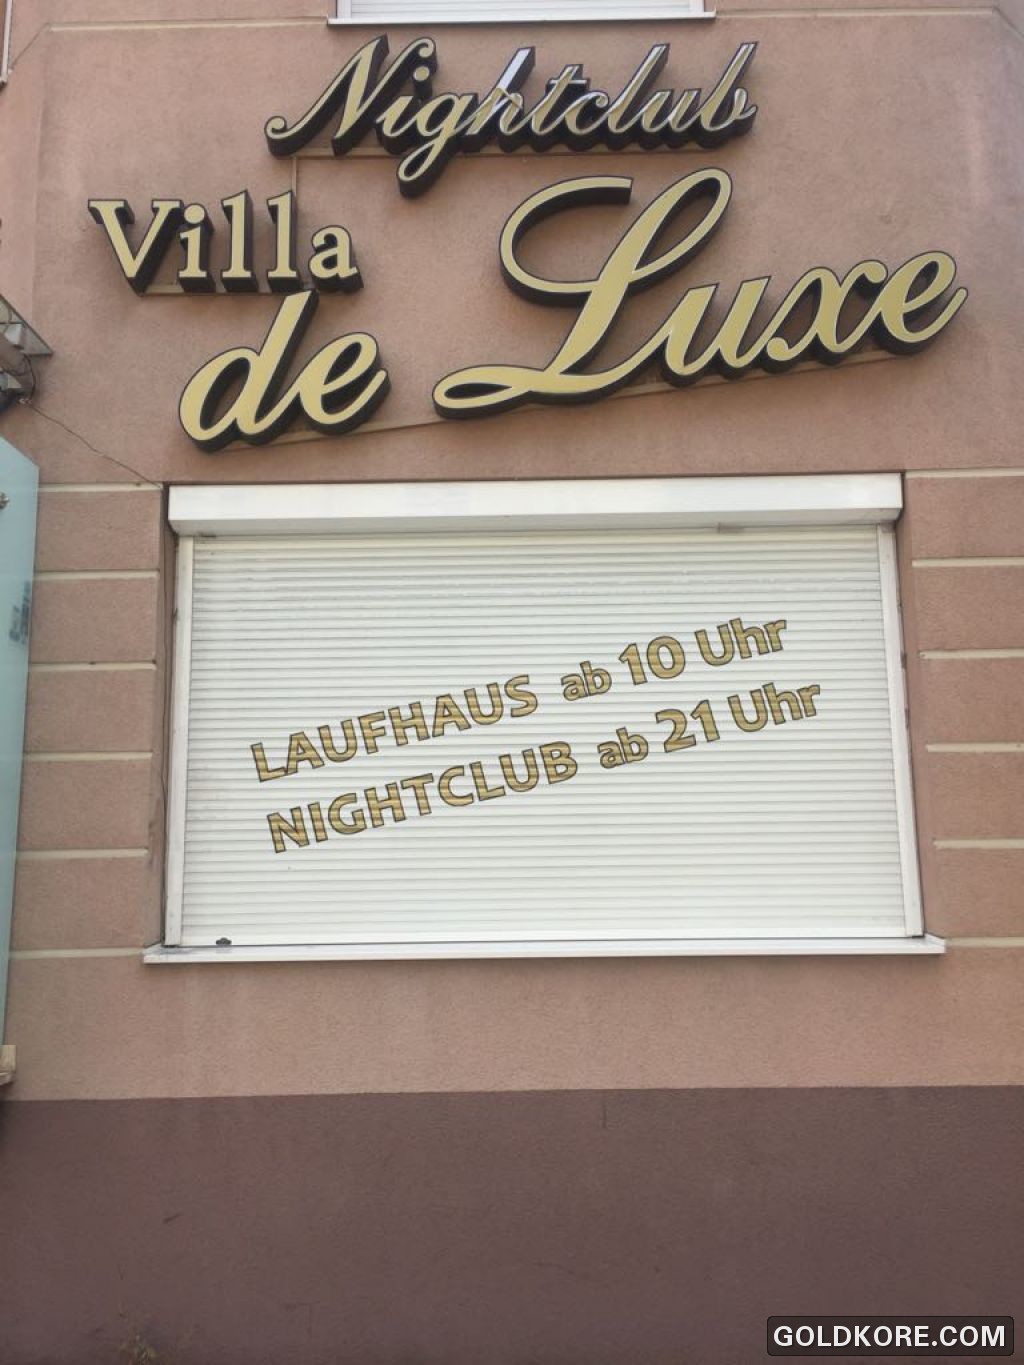 Nightclub & Laufhaus Villa Deluxe in 9020 Klagenfurt am Wörthersee